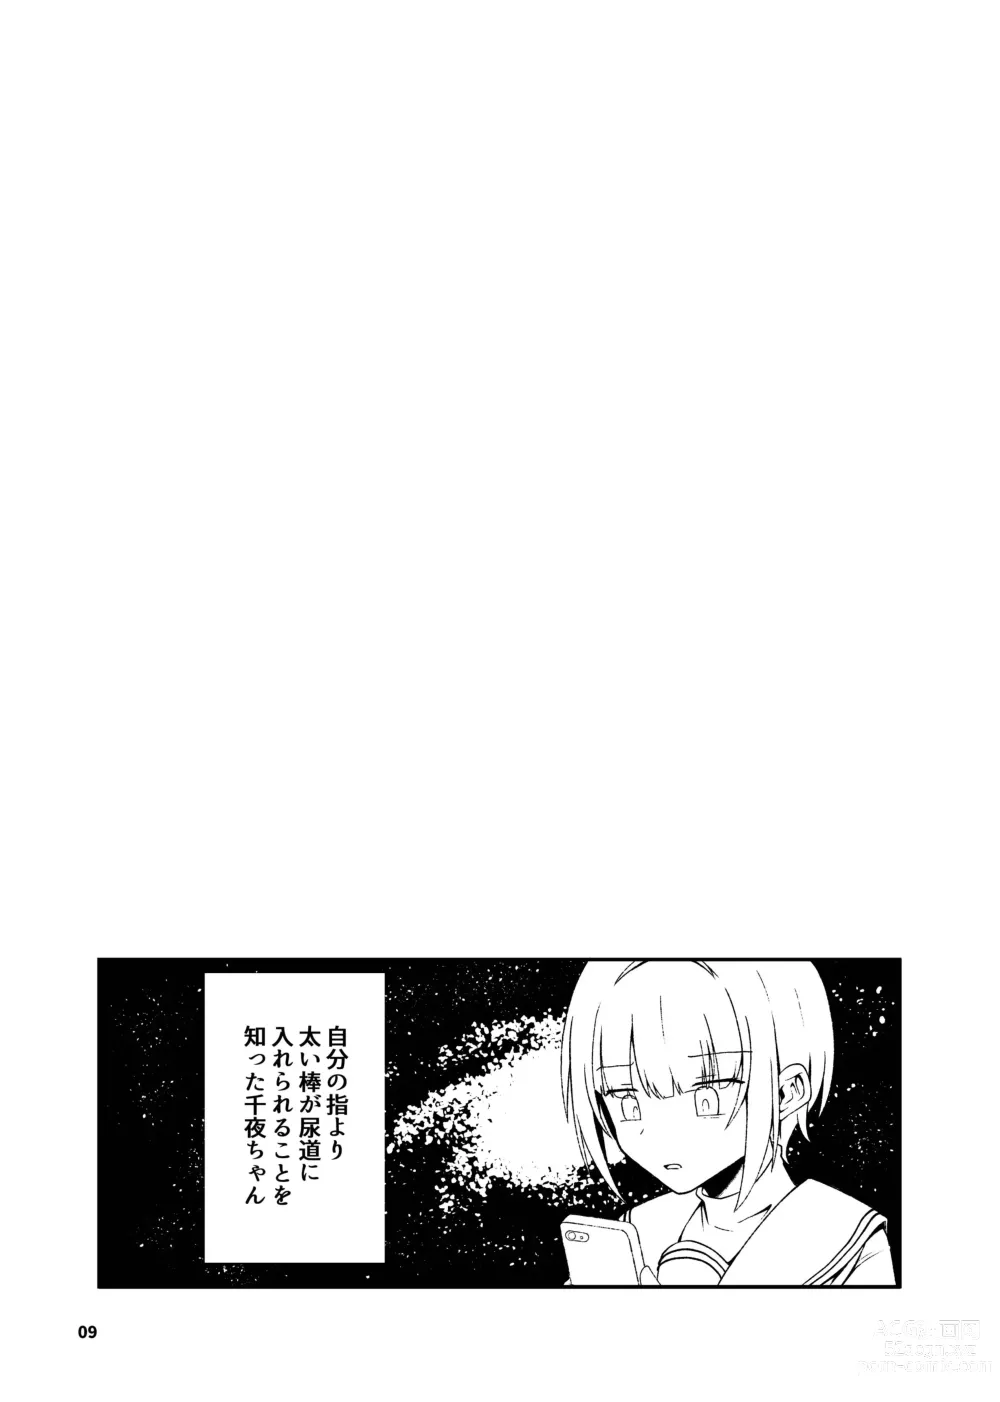 Page 10 of doujinshi Kurosaki Chitose Ecchi Manga Matome Hon